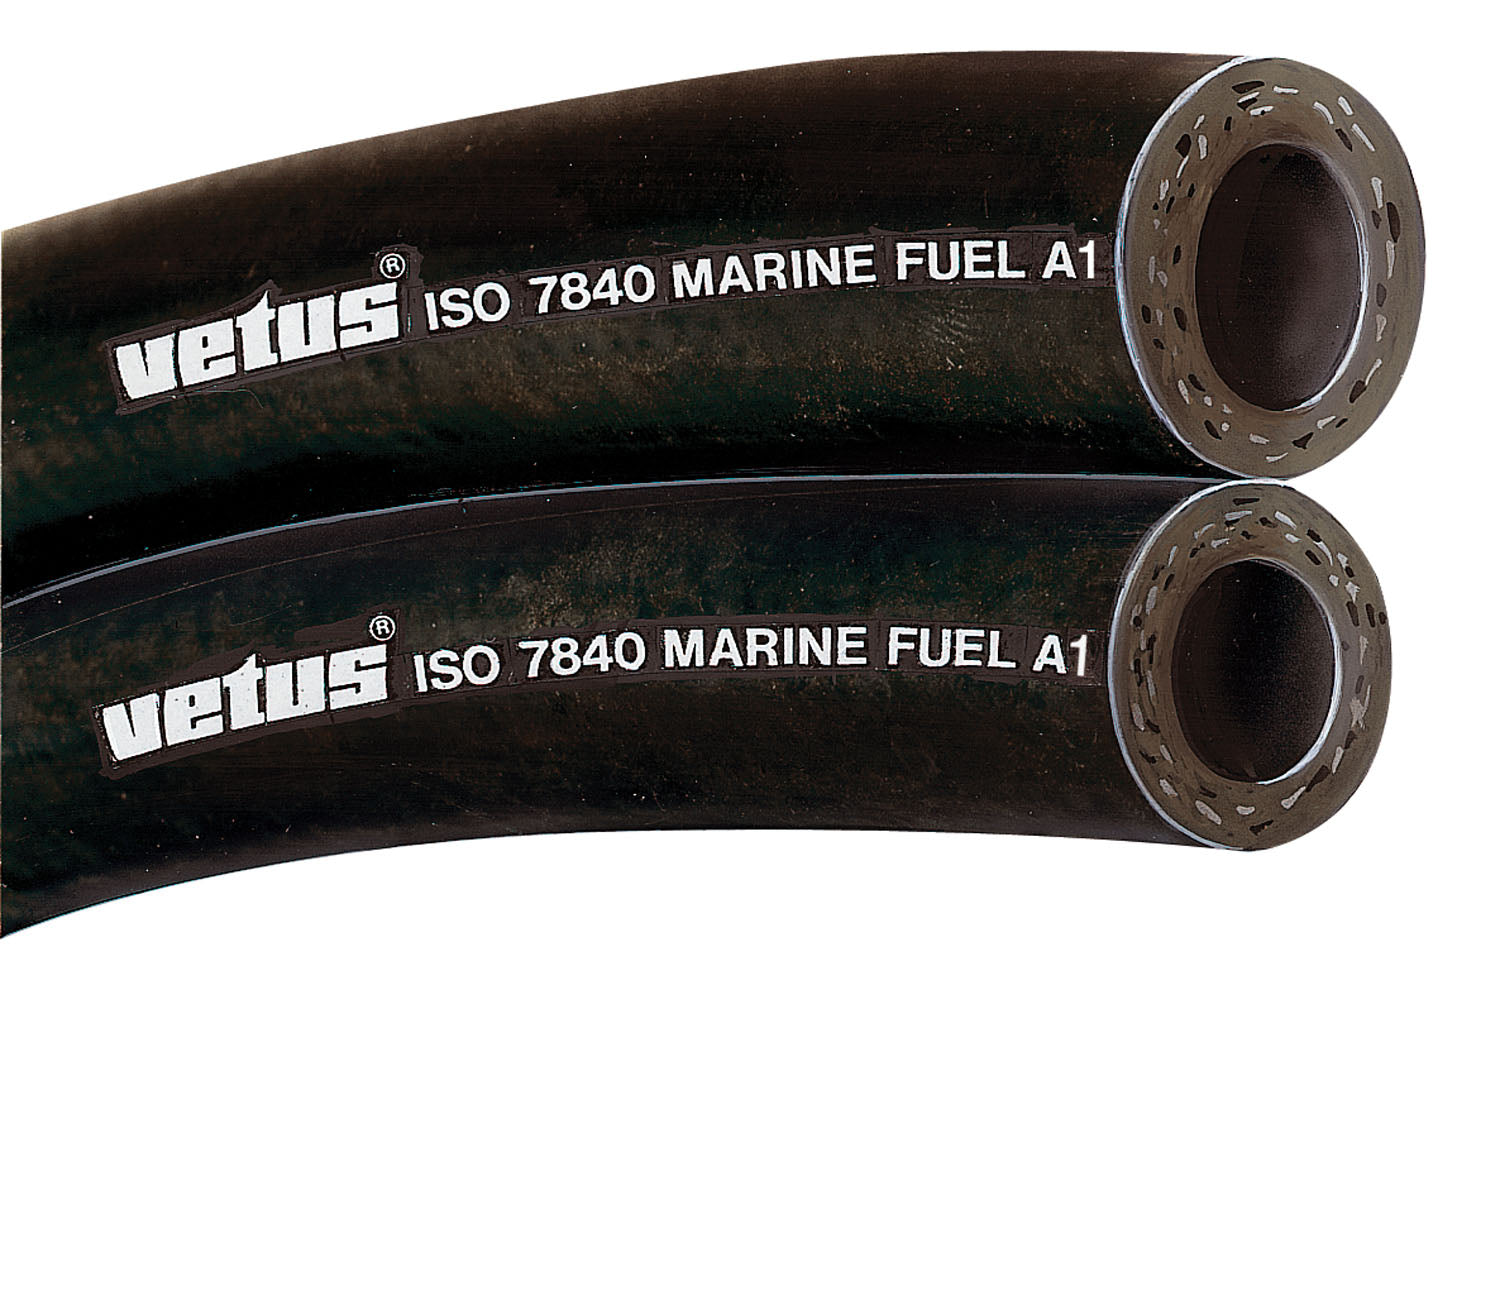 Vetus FUHOSE06A - Fuel hose 6x13mm iso 7840-marine fuel A1